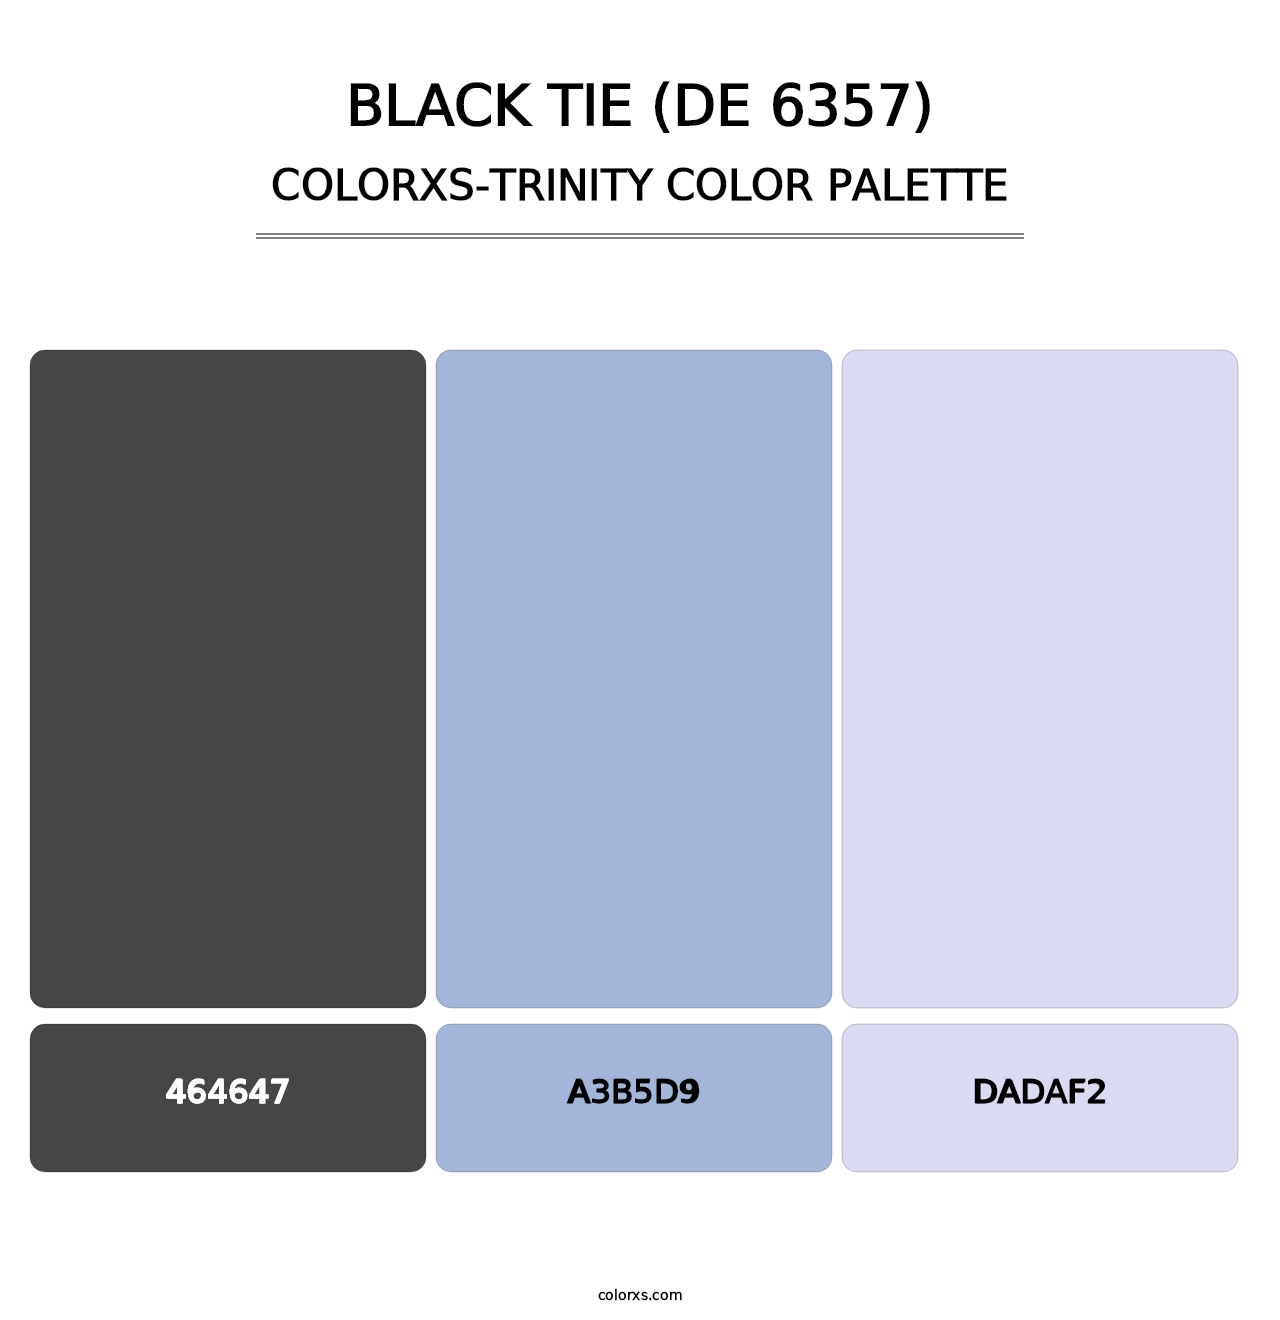 Black Tie (DE 6357) - Colorxs Trinity Palette